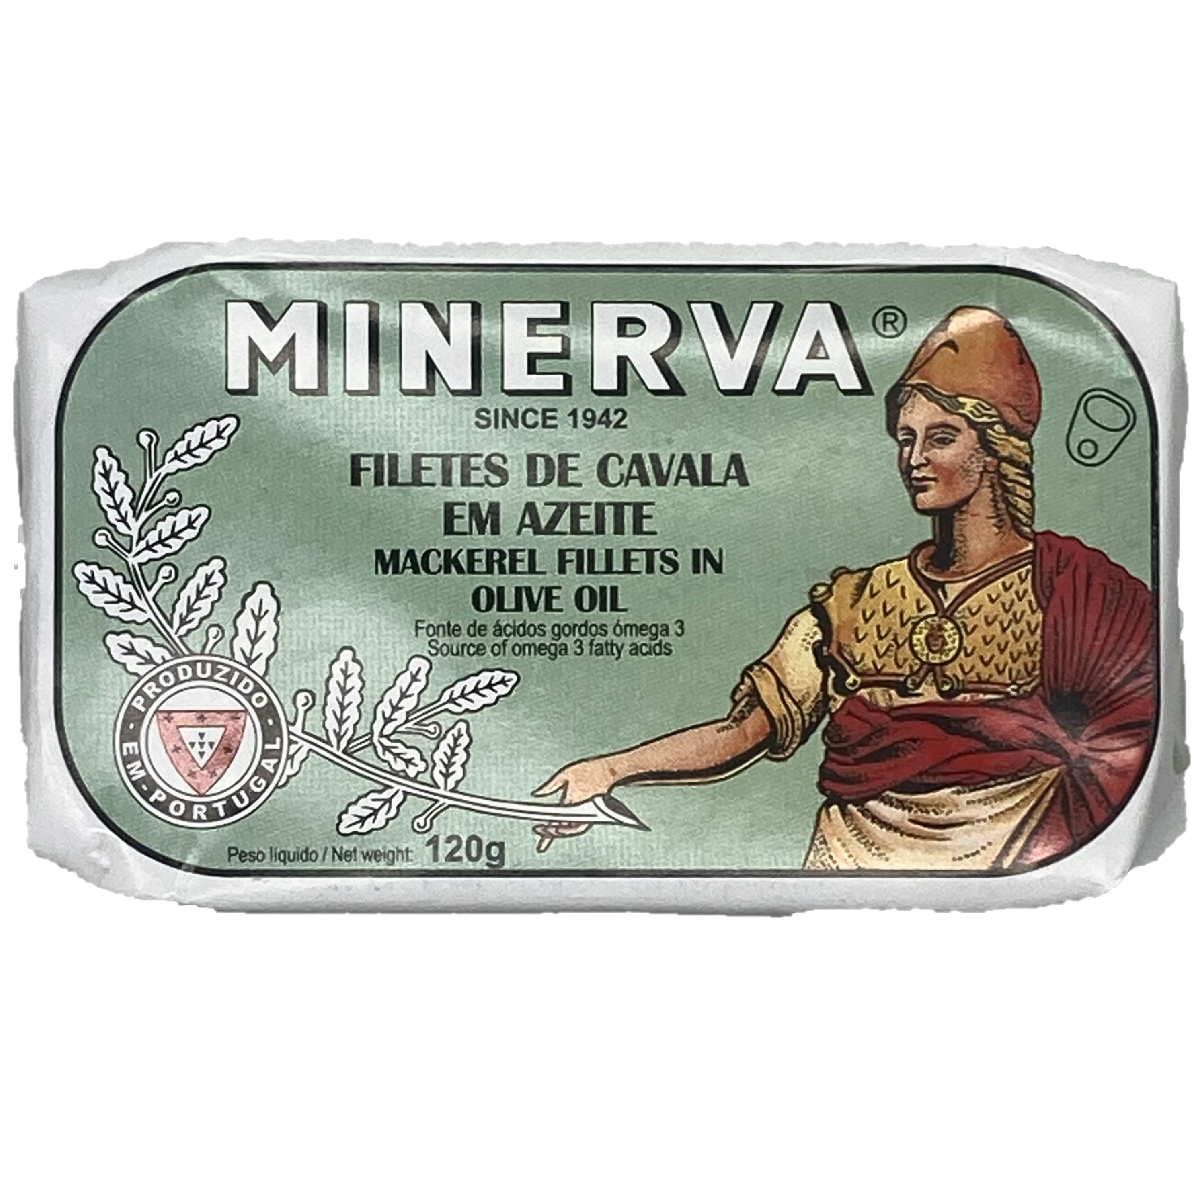 Minerva Mackerel in Olive Oil 120g